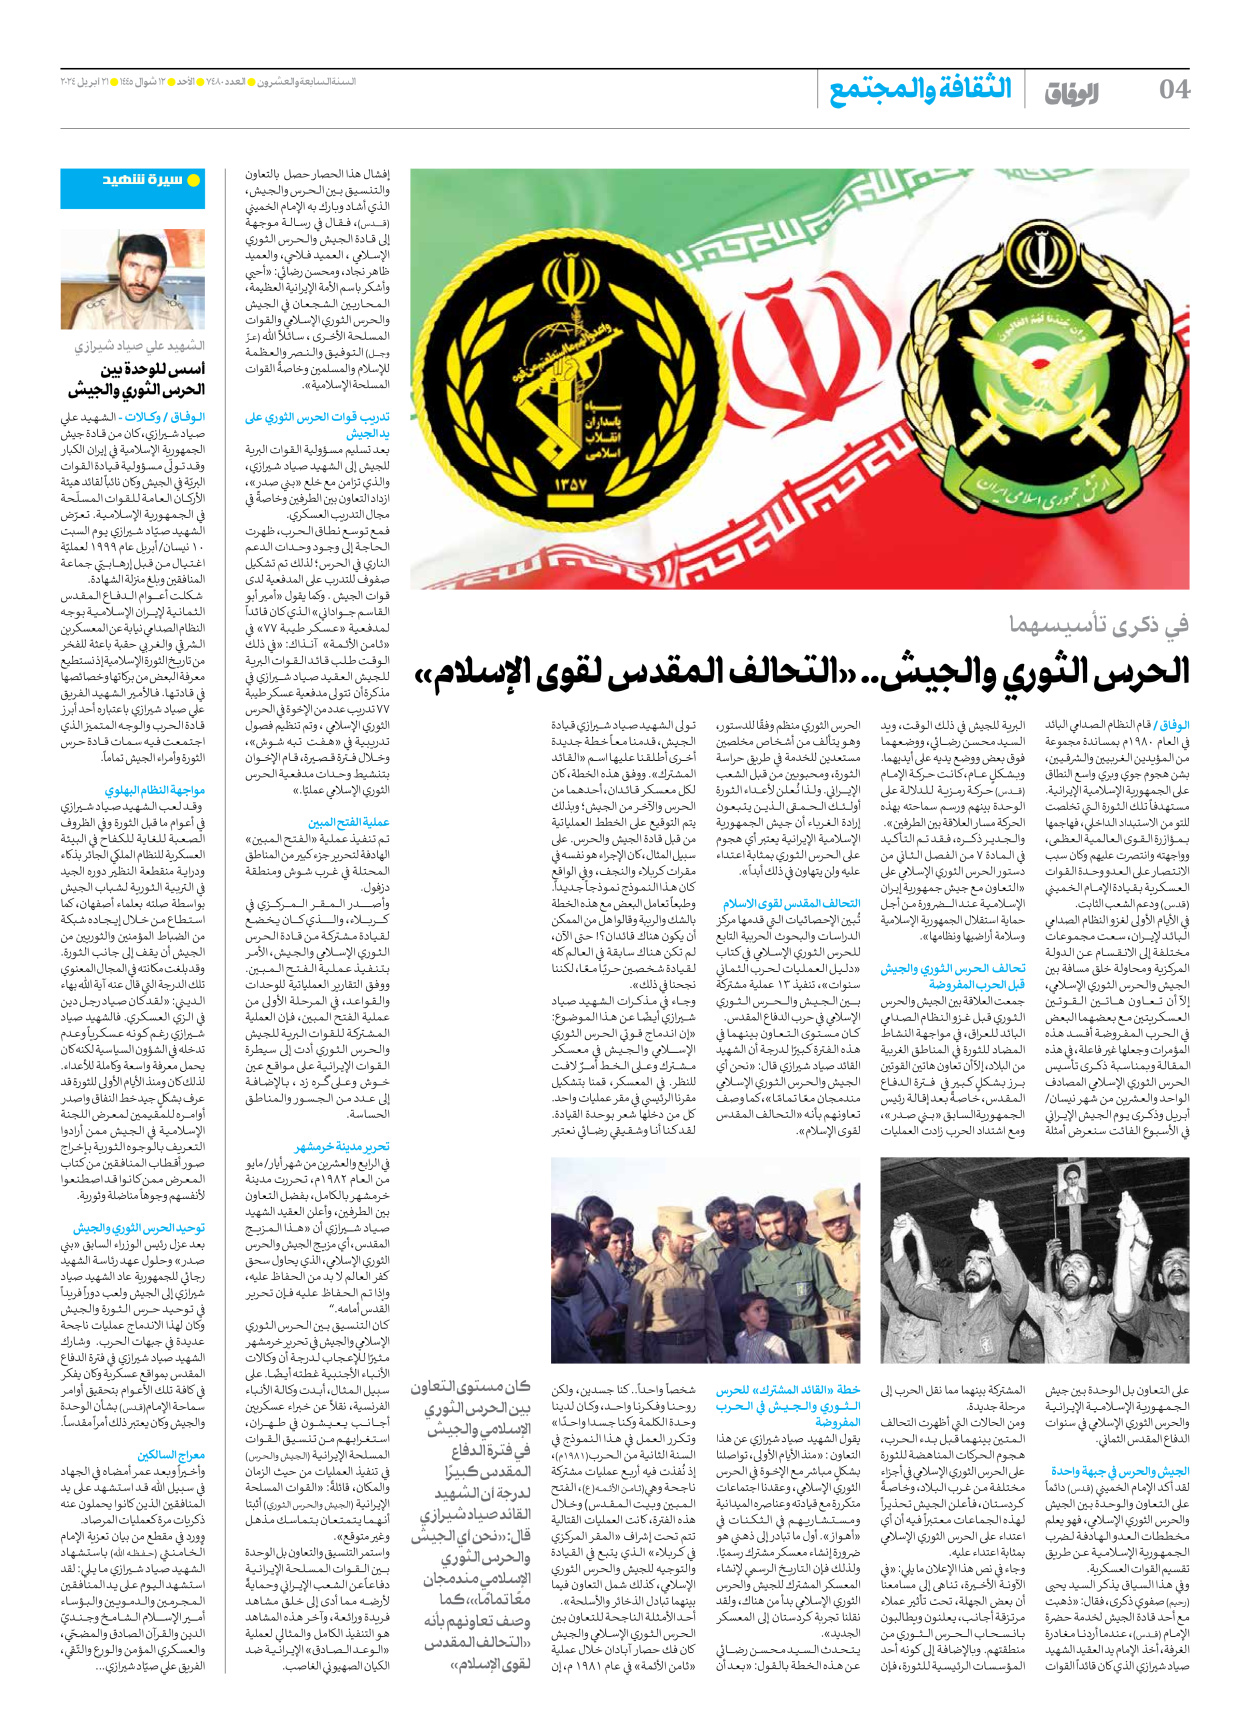 صحیفة ایران الدولیة الوفاق - العدد سبعة آلاف وأربعمائة وثمانون - ٢١ أبريل ٢٠٢٤ - الصفحة ٤